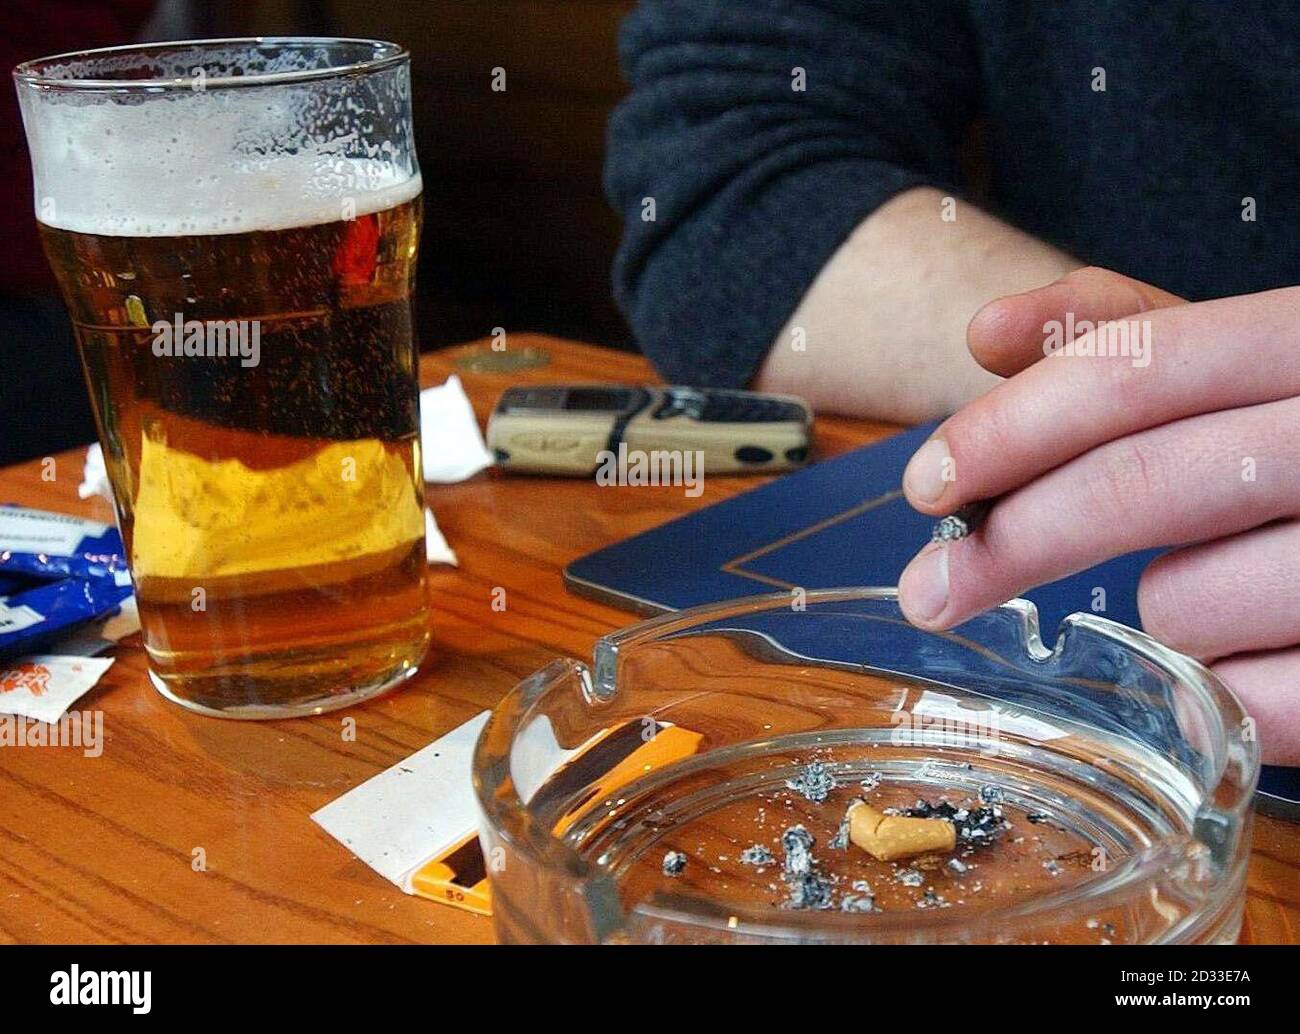 Ein Mitglied der Öffentlichkeit sitzt im ausgewiesenen Raucherbereich einer Bar im Zentrum von London. Aktivisten haben gesagt, dass durch das Rauchverbot an öffentlichen Orten mehr Menschenleben gerettet werden würden, als jedes Jahr bei Verkehrsunfällen verloren gehen. Anlässlich des No Smoking Day sagte der Direktor der Kampagne, Ben Youdan, dass das Verbot von Tabak in Pubs, Bars und allen Arbeitsplätzen 4,800 Menschenleben pro Jahr in England, Wales und Schottland retten würde. Stockfoto